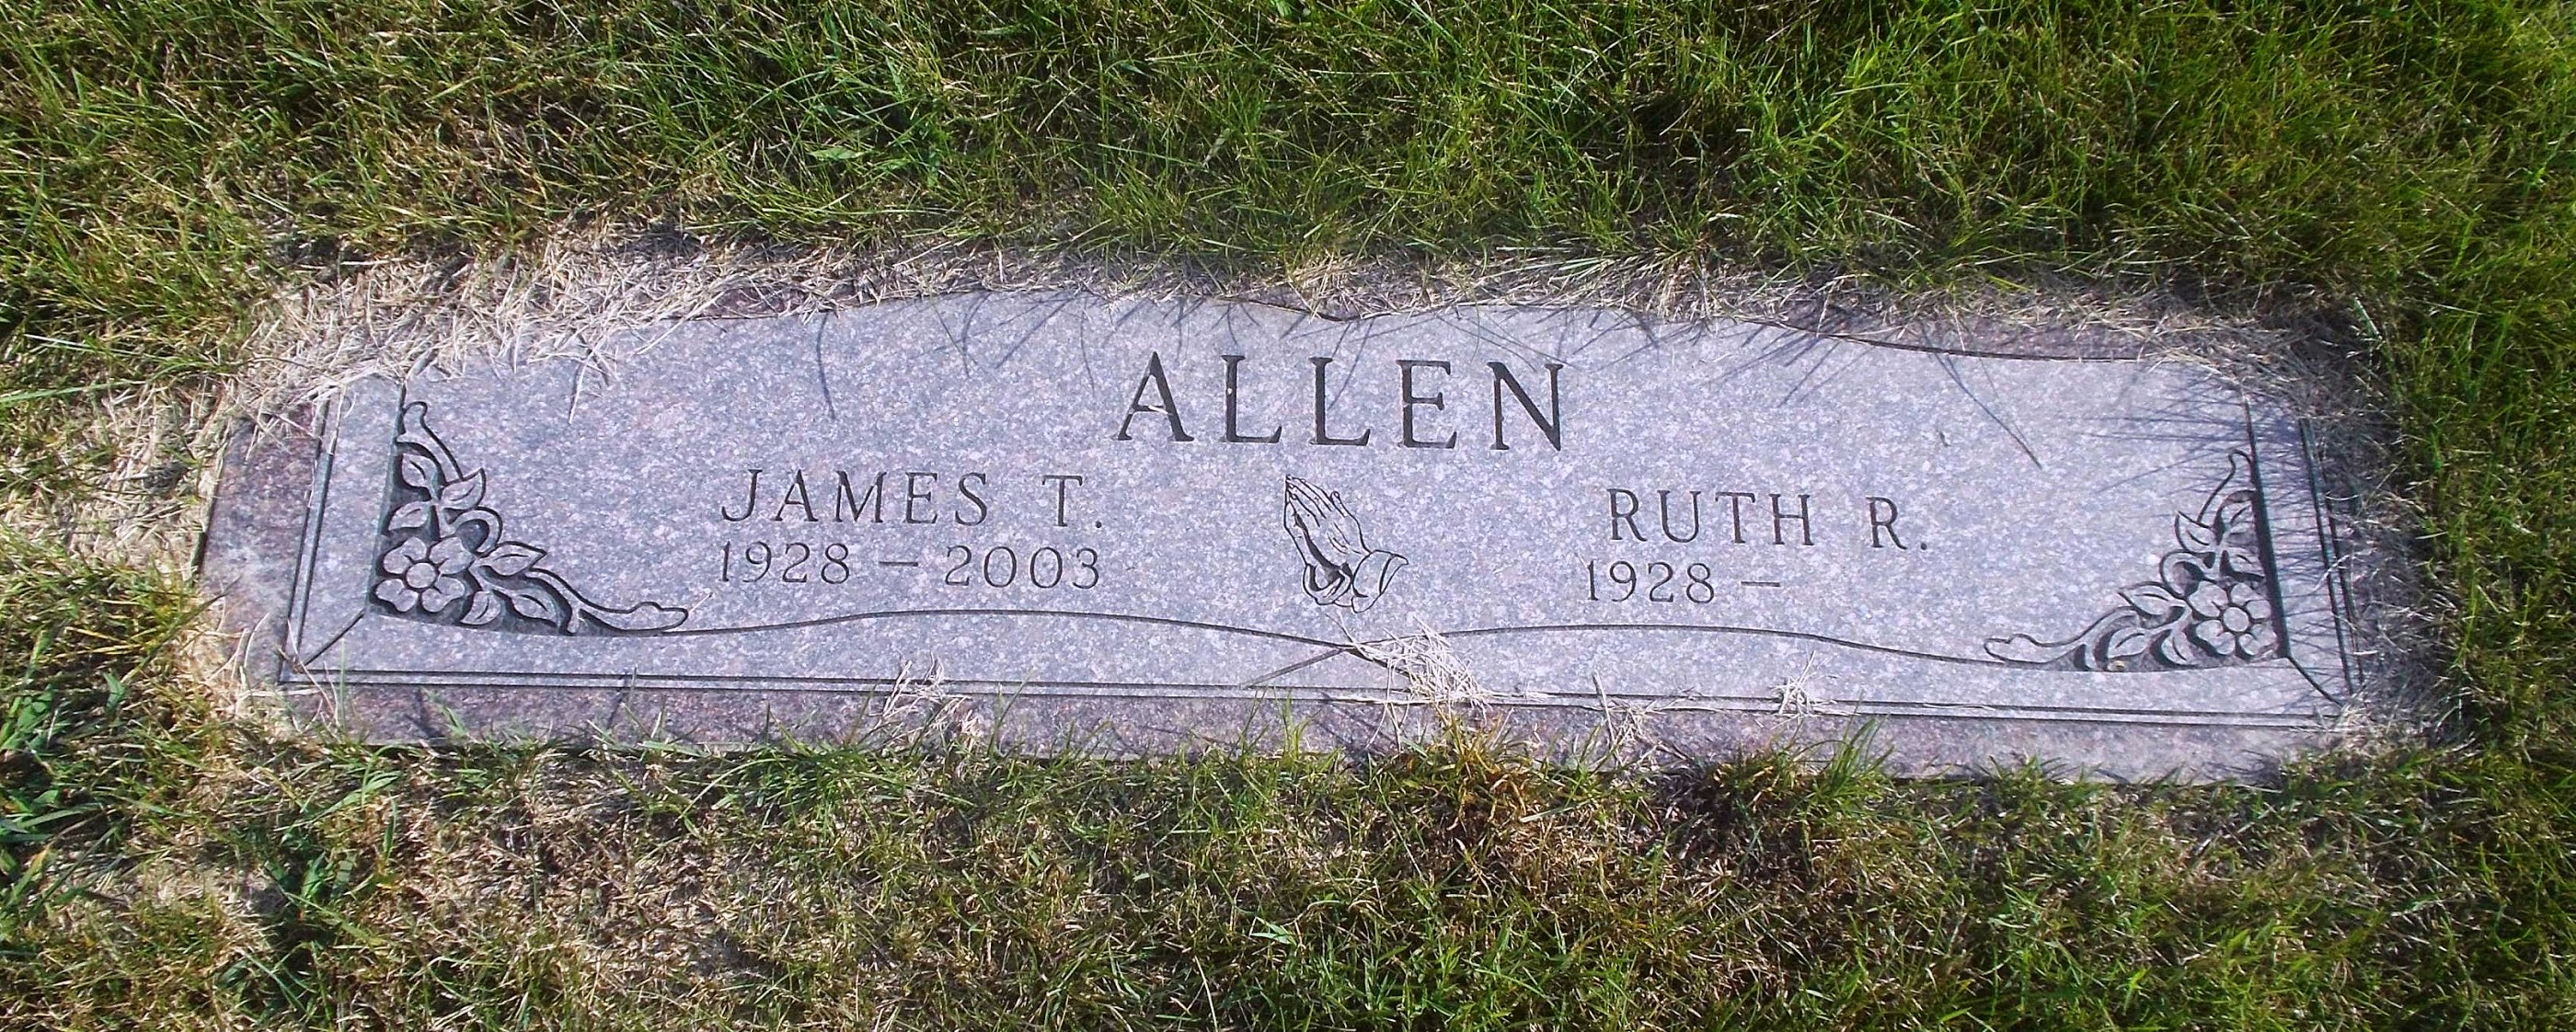 Ruth R Allen